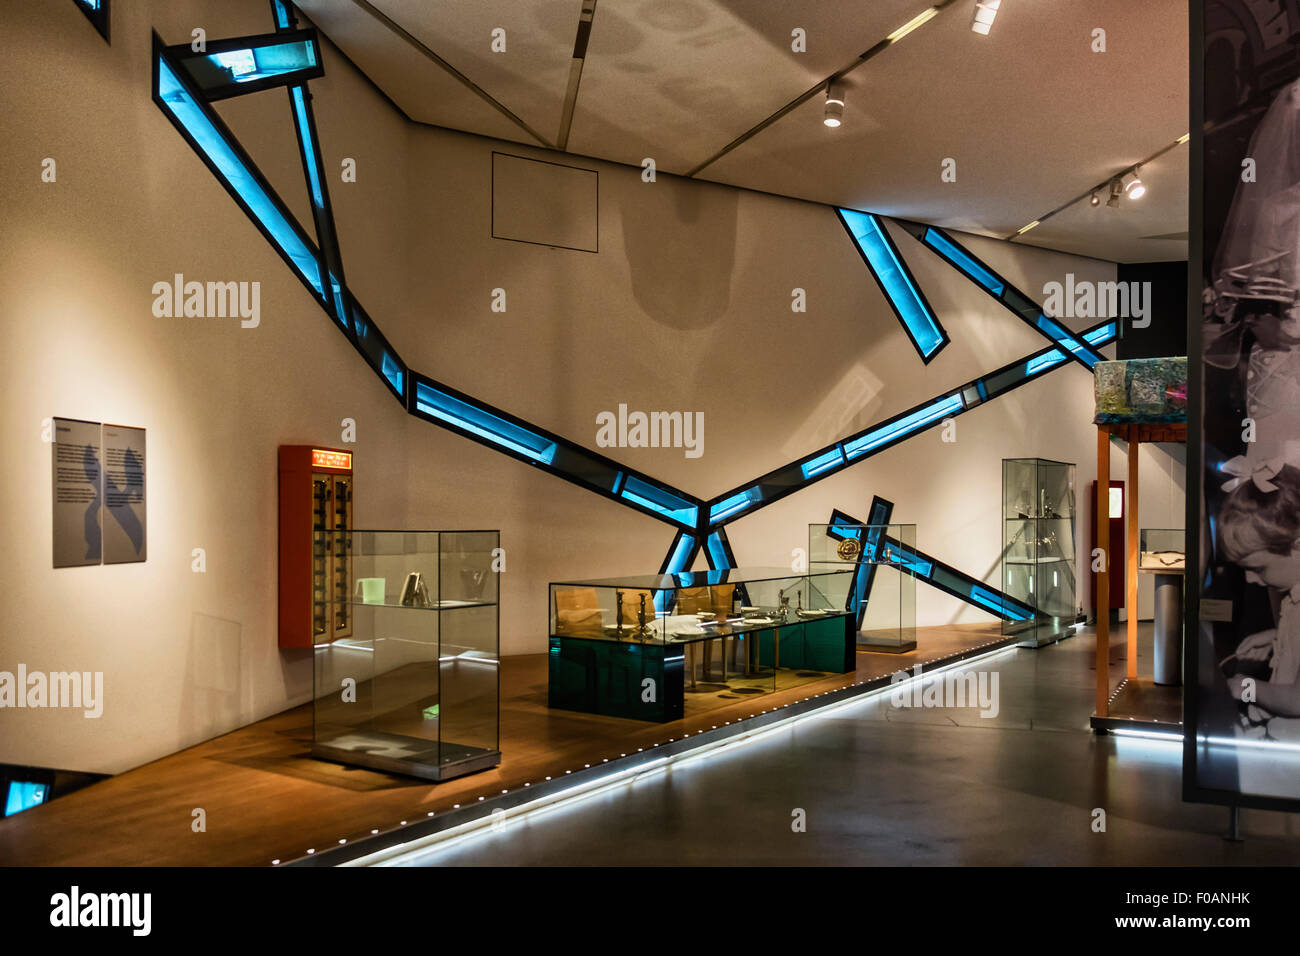 Berlin Jewish Museum Judisches Museum Interior Display